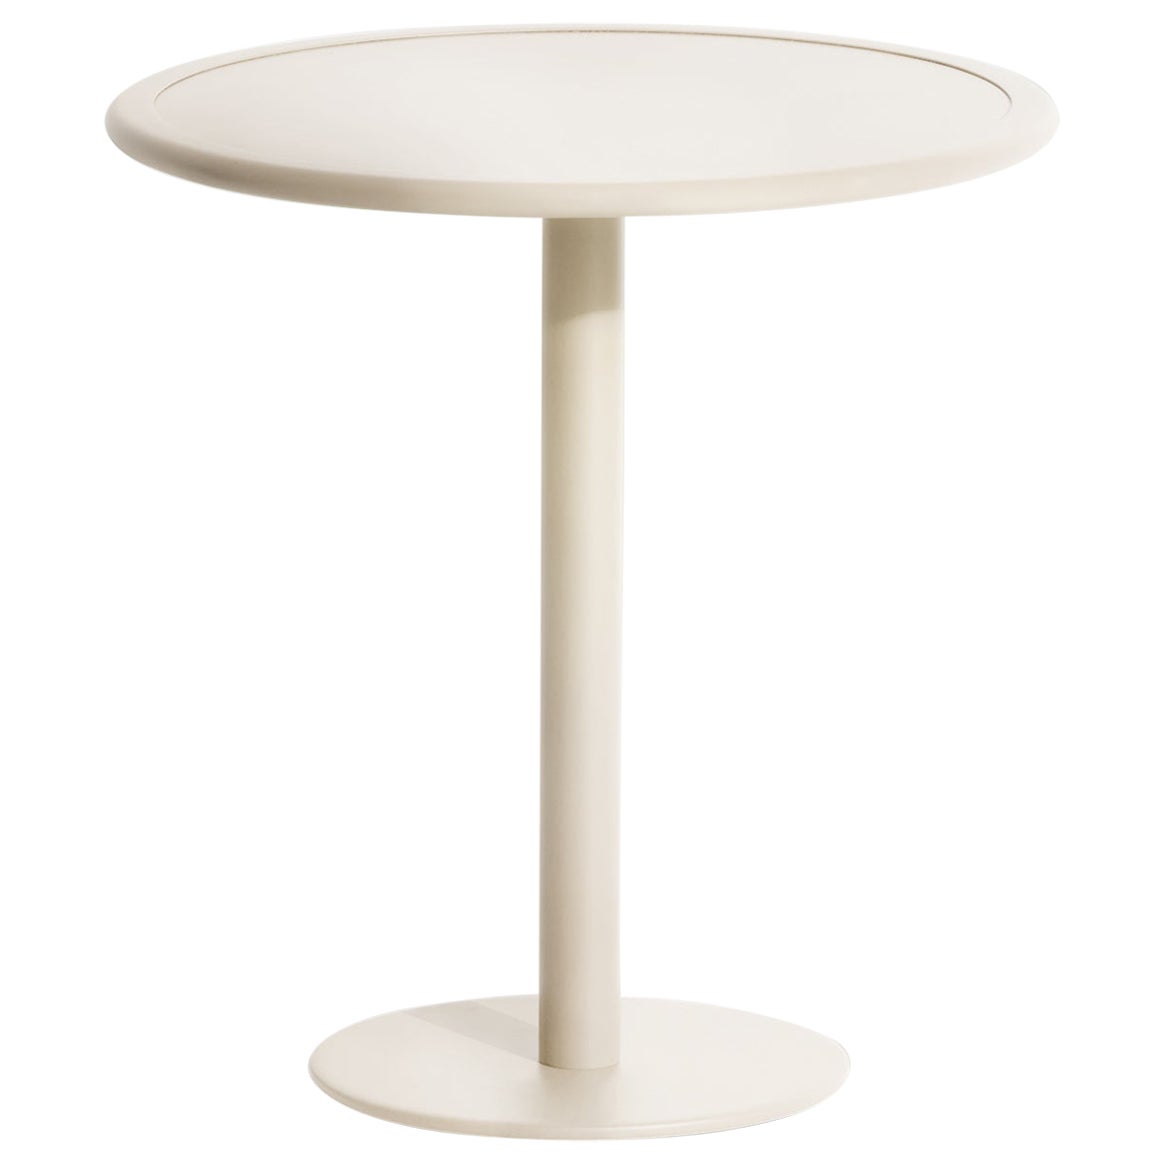 Petite table de salle à manger ronde bistro Week-end en aluminium ivoire de Friture, 2017 en vente